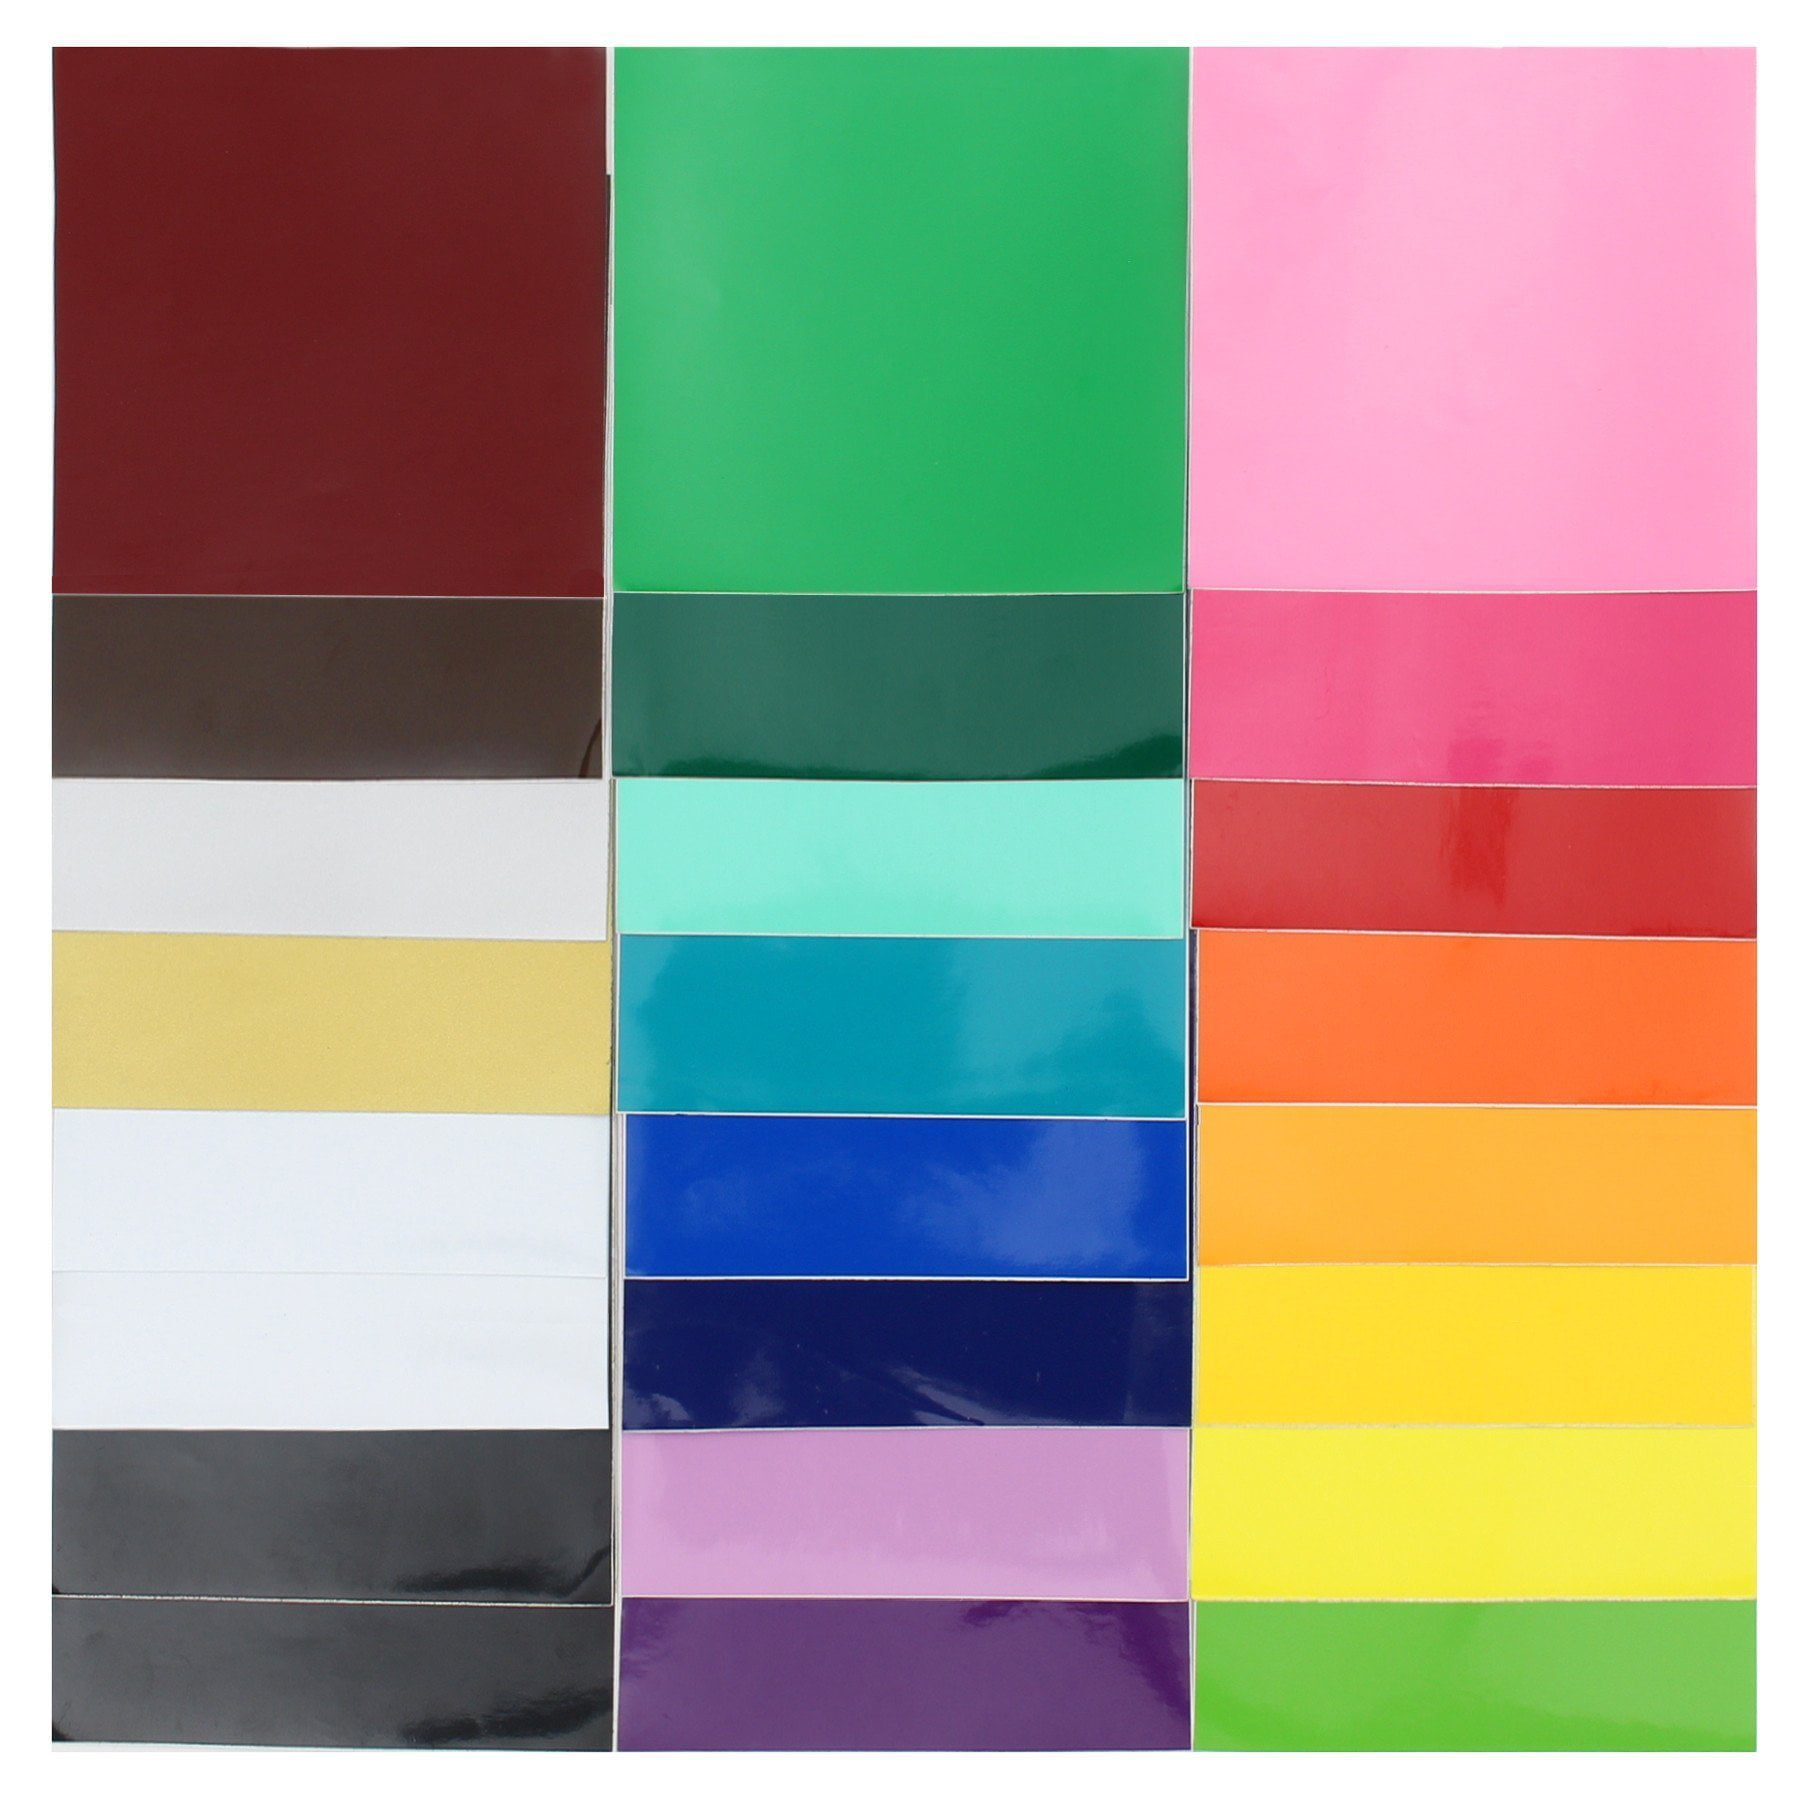 All Colors Oracal 651 Vinyl Bundle